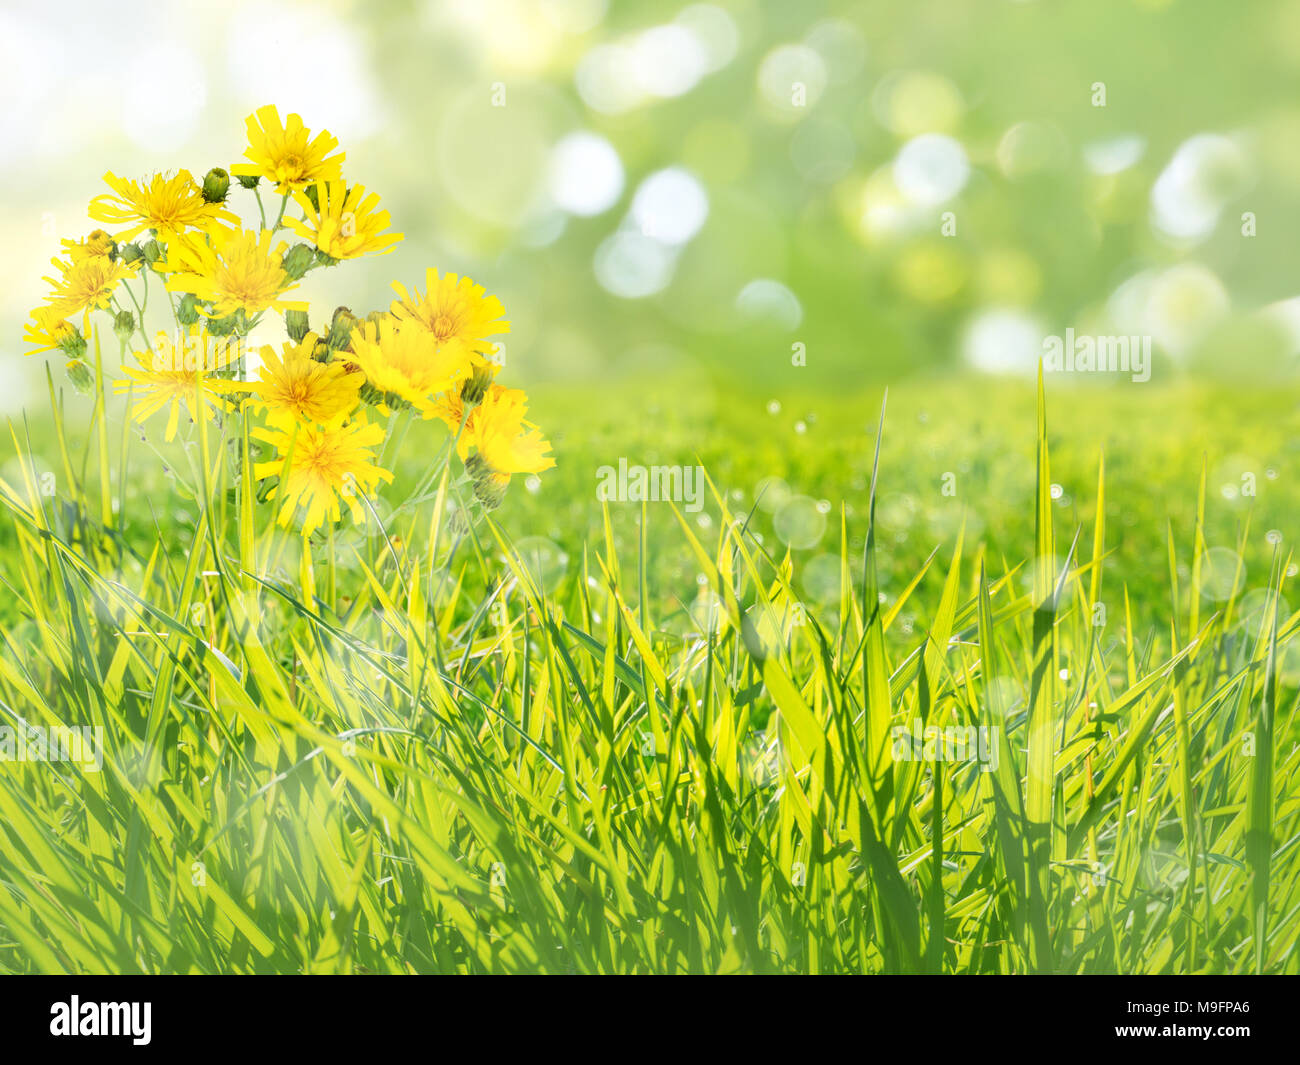 Meadow barba de cabra flores amarillas en el verano fondo borroso Foto de stock